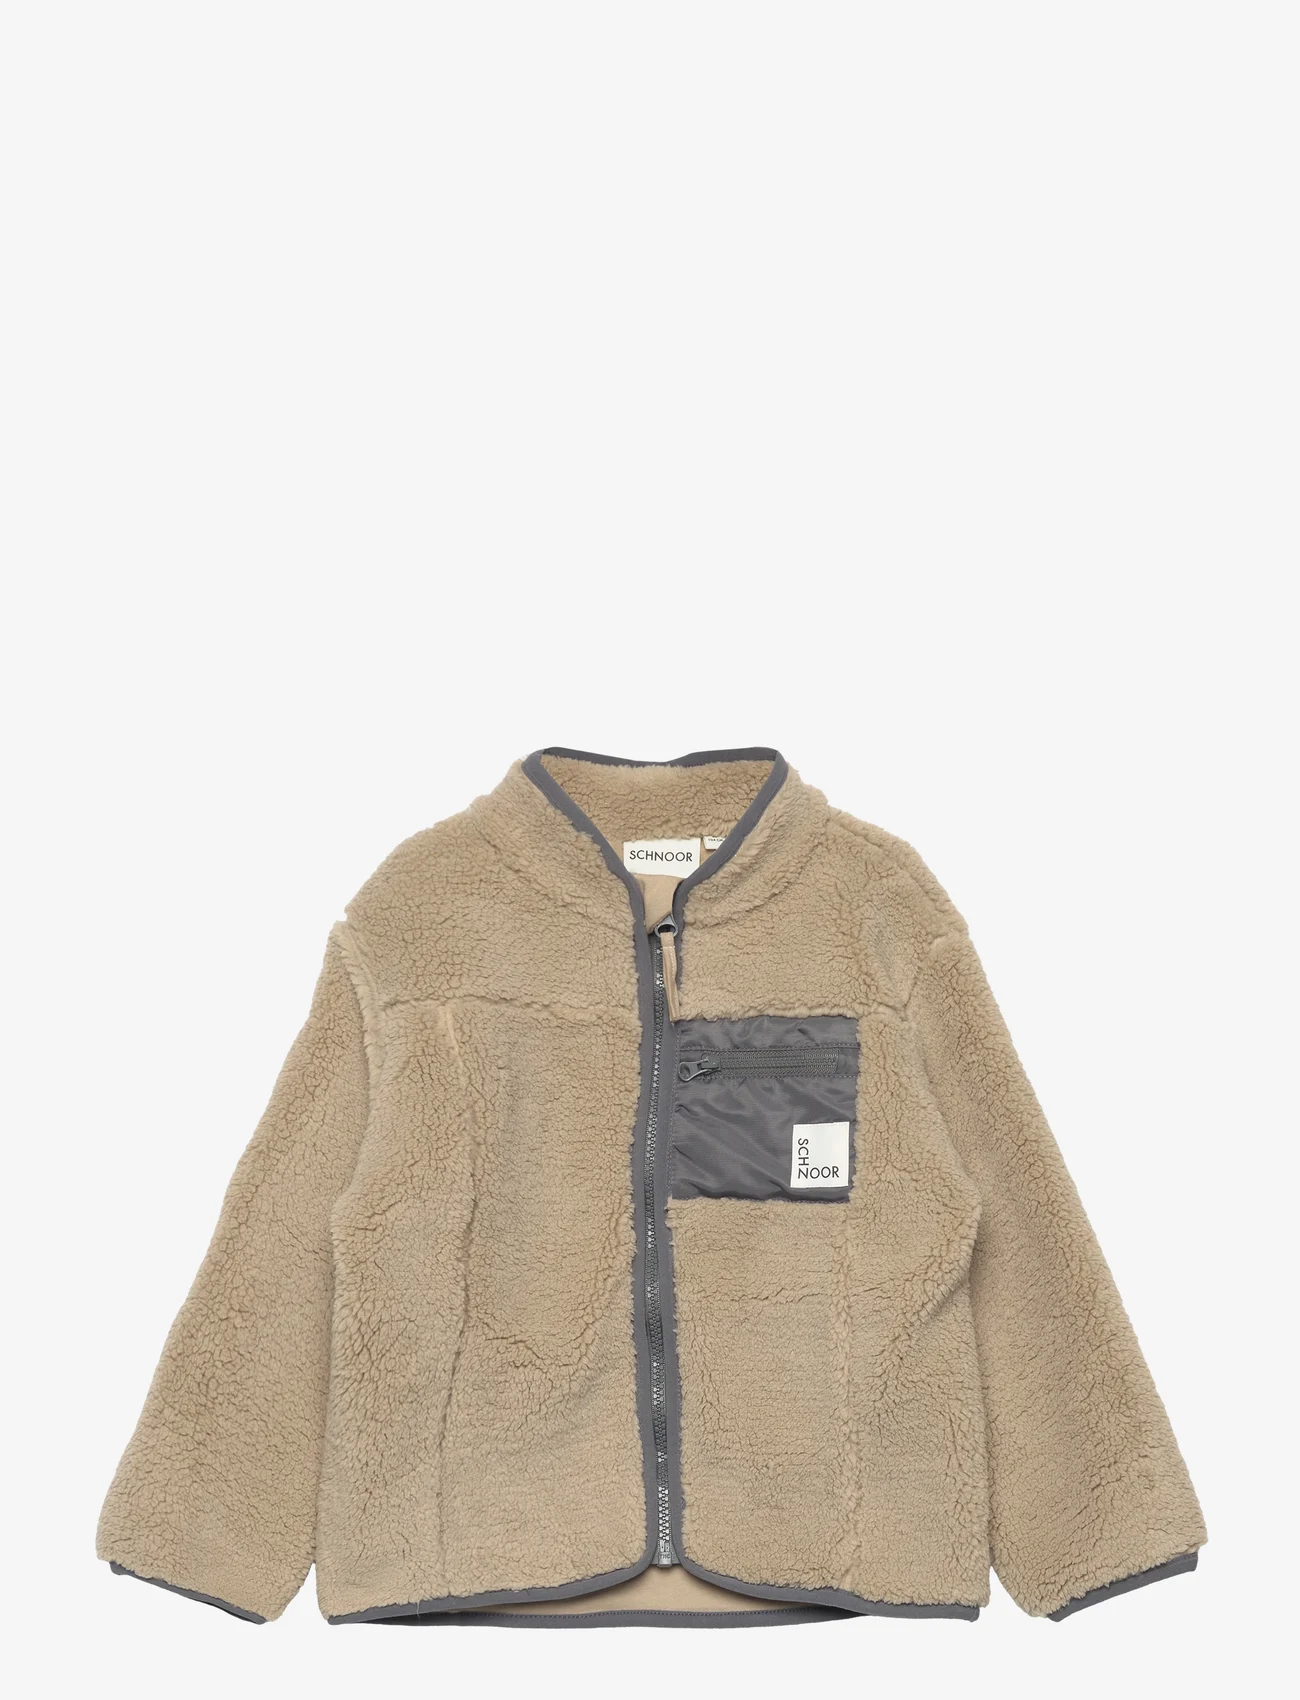 Sofie Schnoor Baby and Kids - Jacket - fleece jacket - dark sand - 0